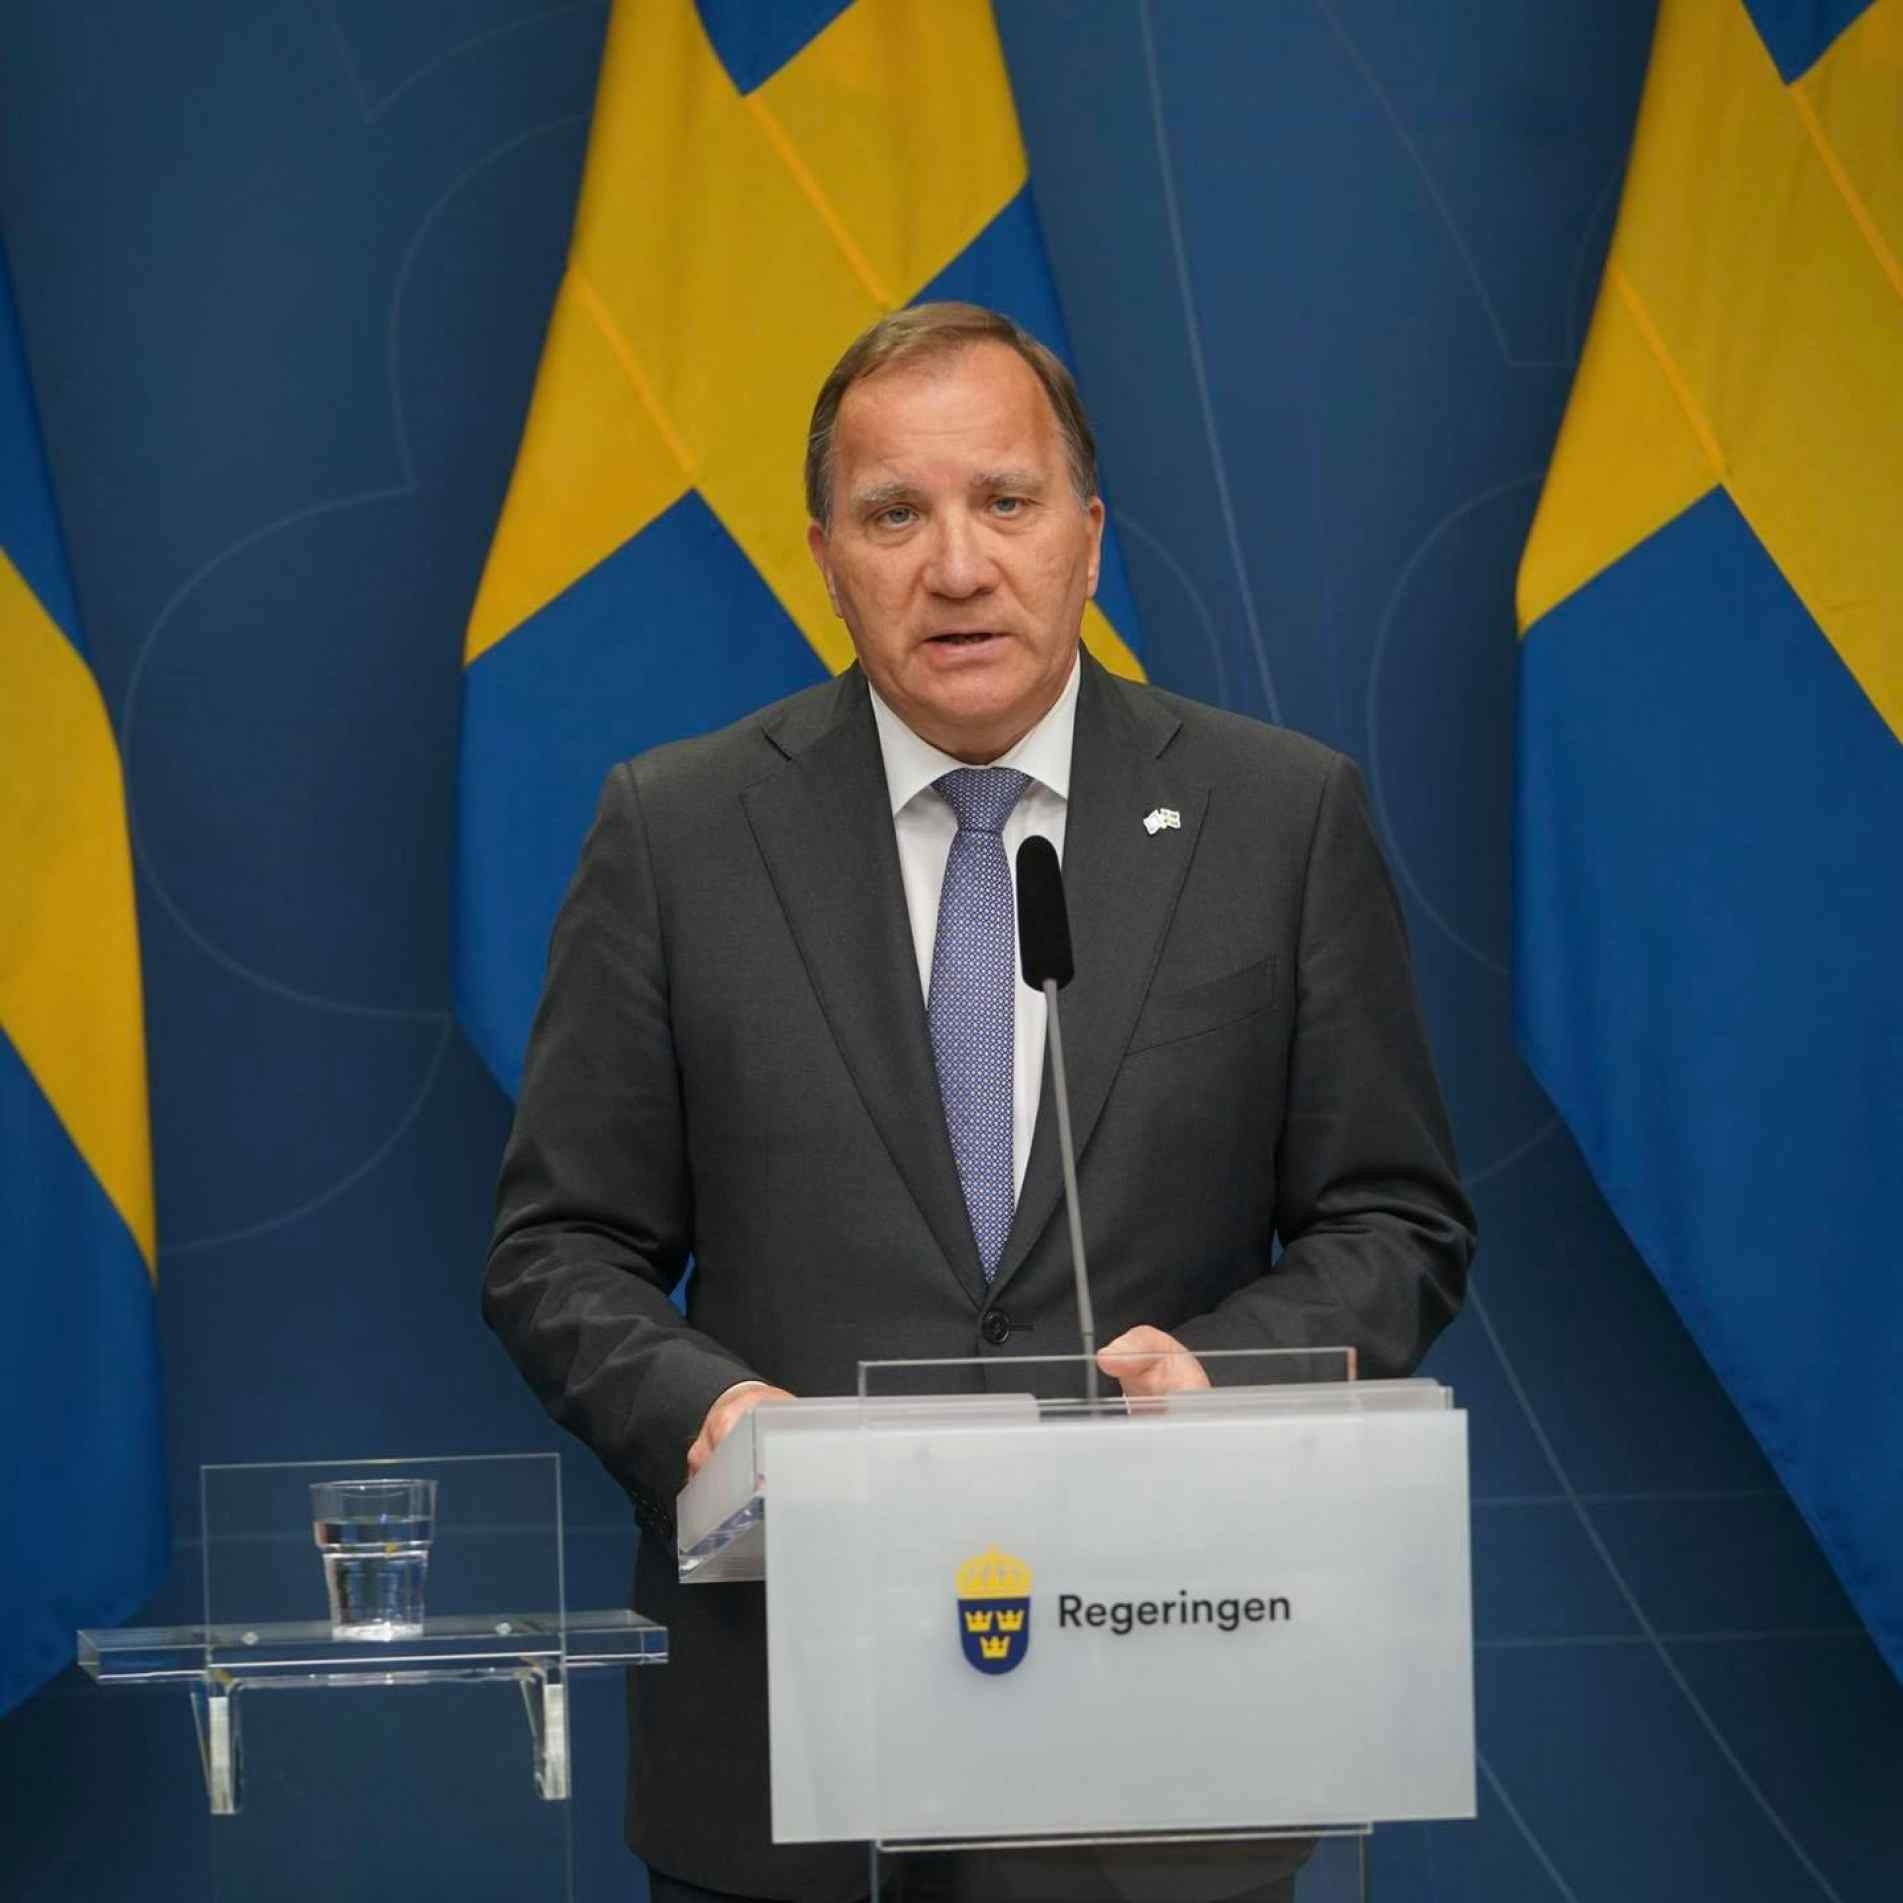 Stefan Löfven era Primeiro-ministro da Suécia